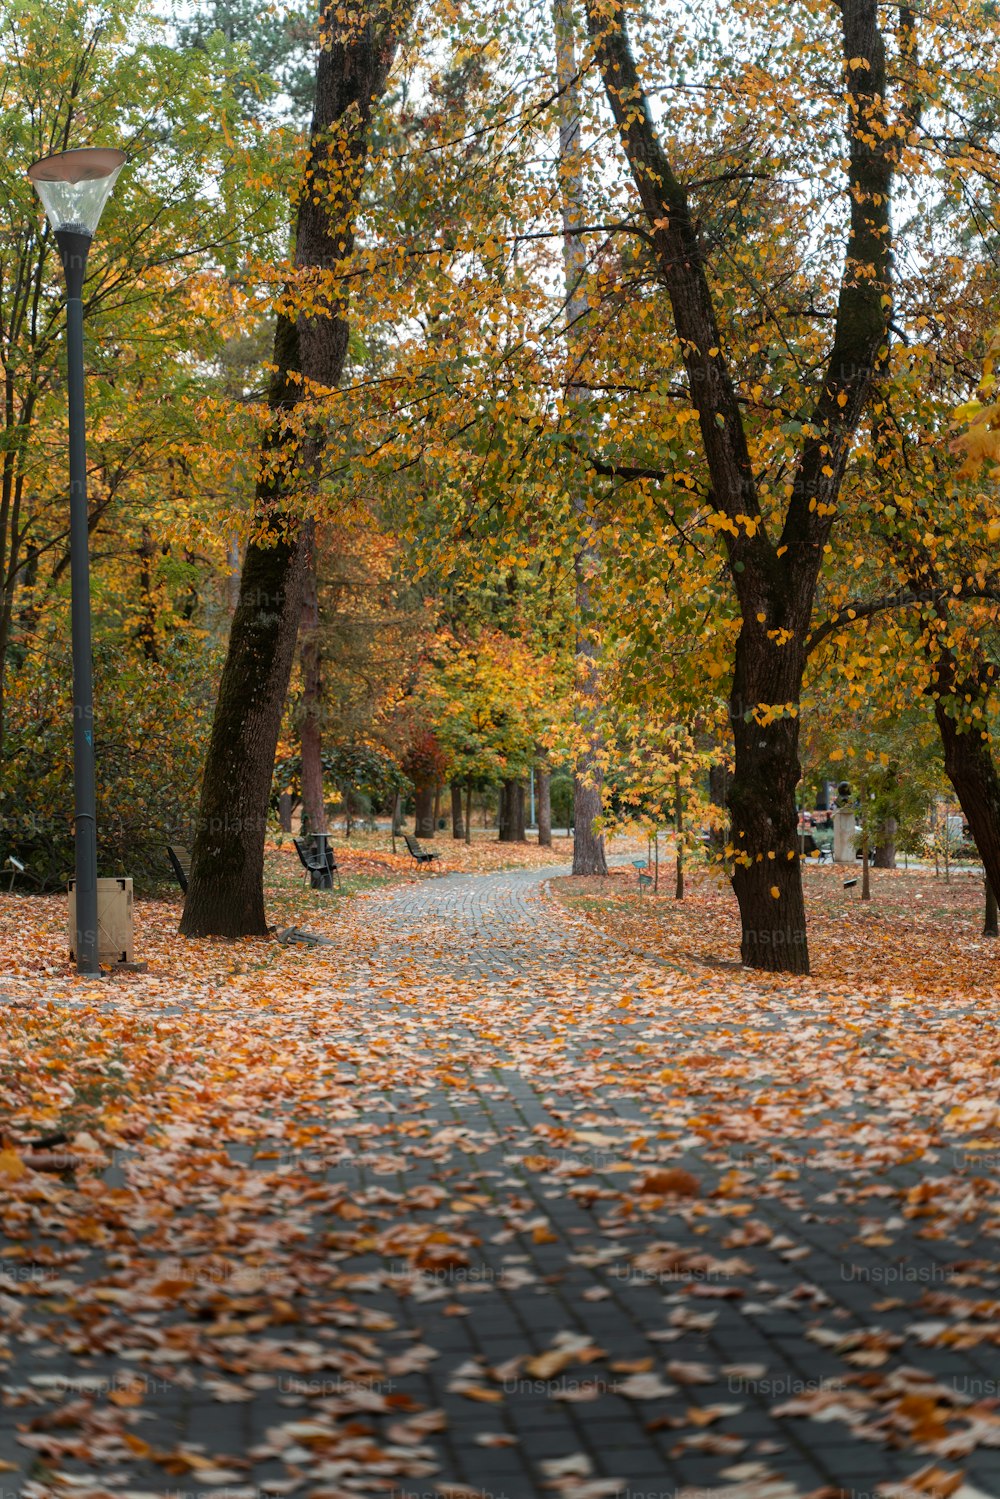 Un camino en un parque con muchas hojas en el suelo